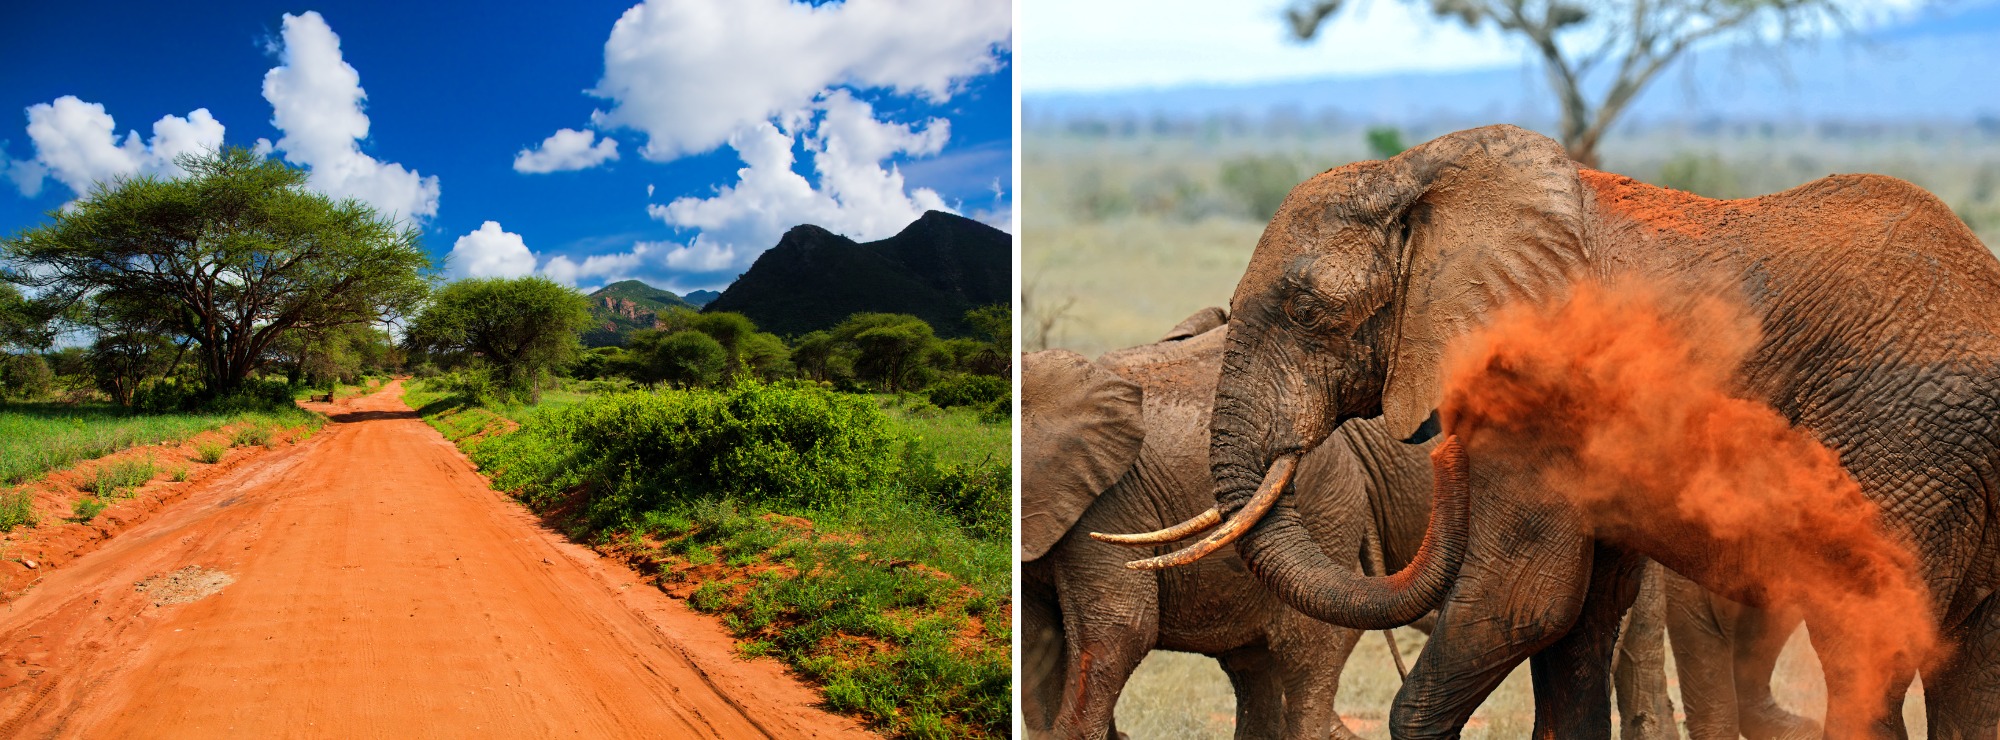 Tsavo nacionalinis parkas – didžiausias Kenijoje